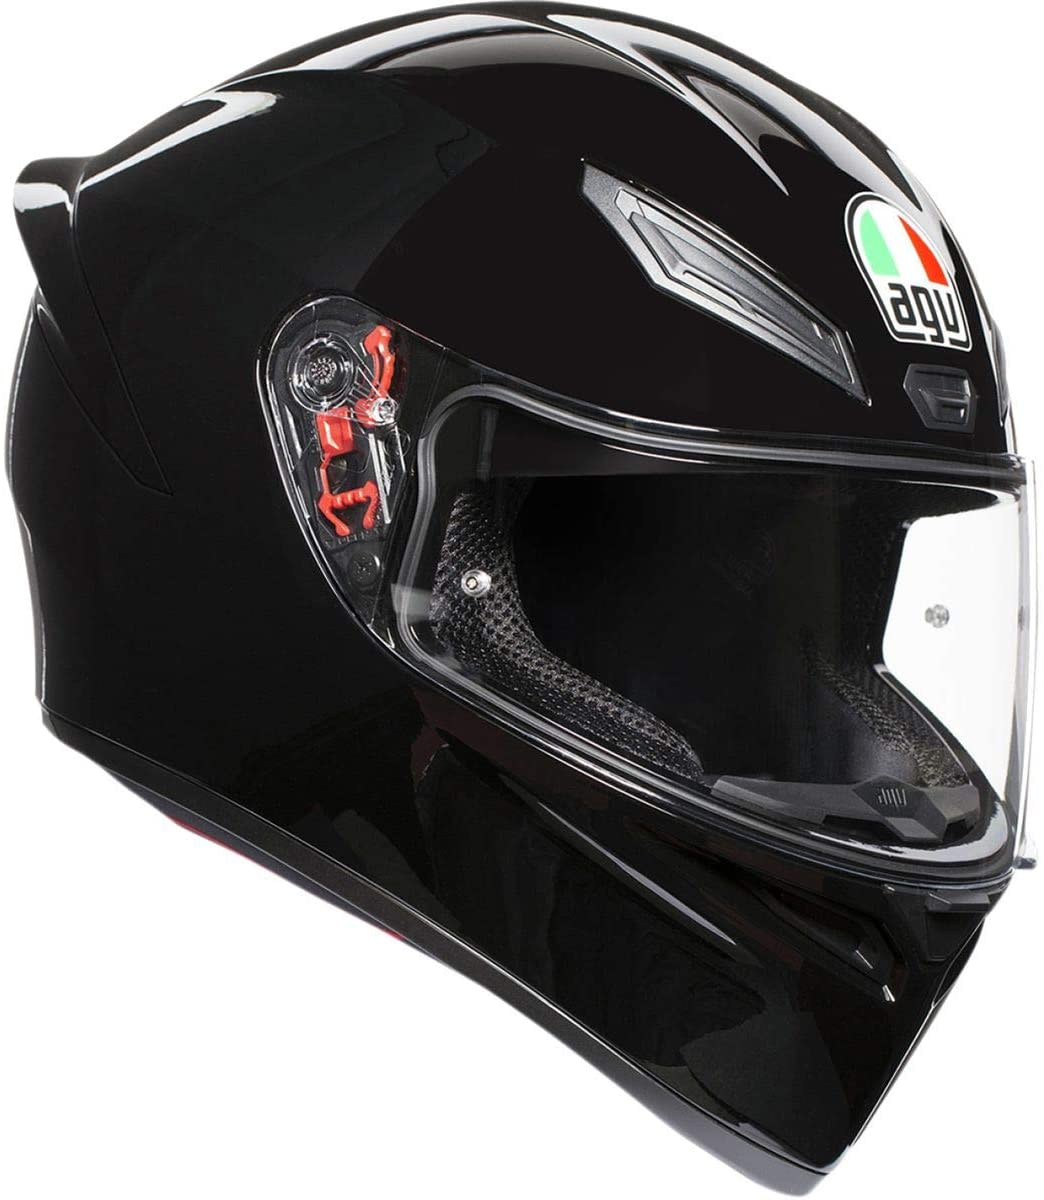 Quietest Motorcycle Helmet Under $200:11 Best Quiet Picks - Soundproof